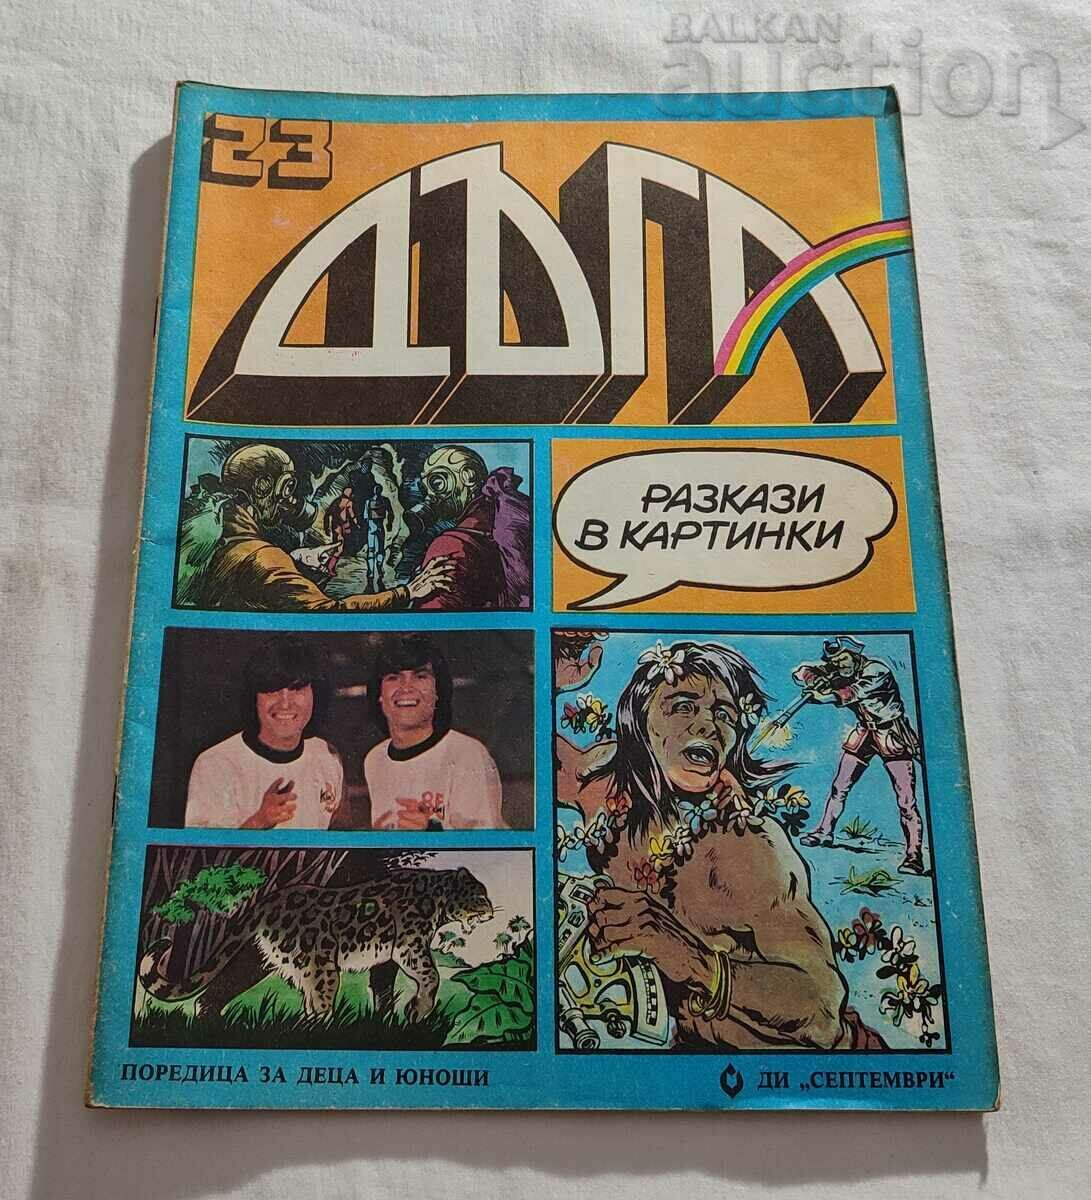 СПИСАНИЕ "ДЪГА" БРОЙ 23 БРАТЯ АРГИРОВИ 1986 г.